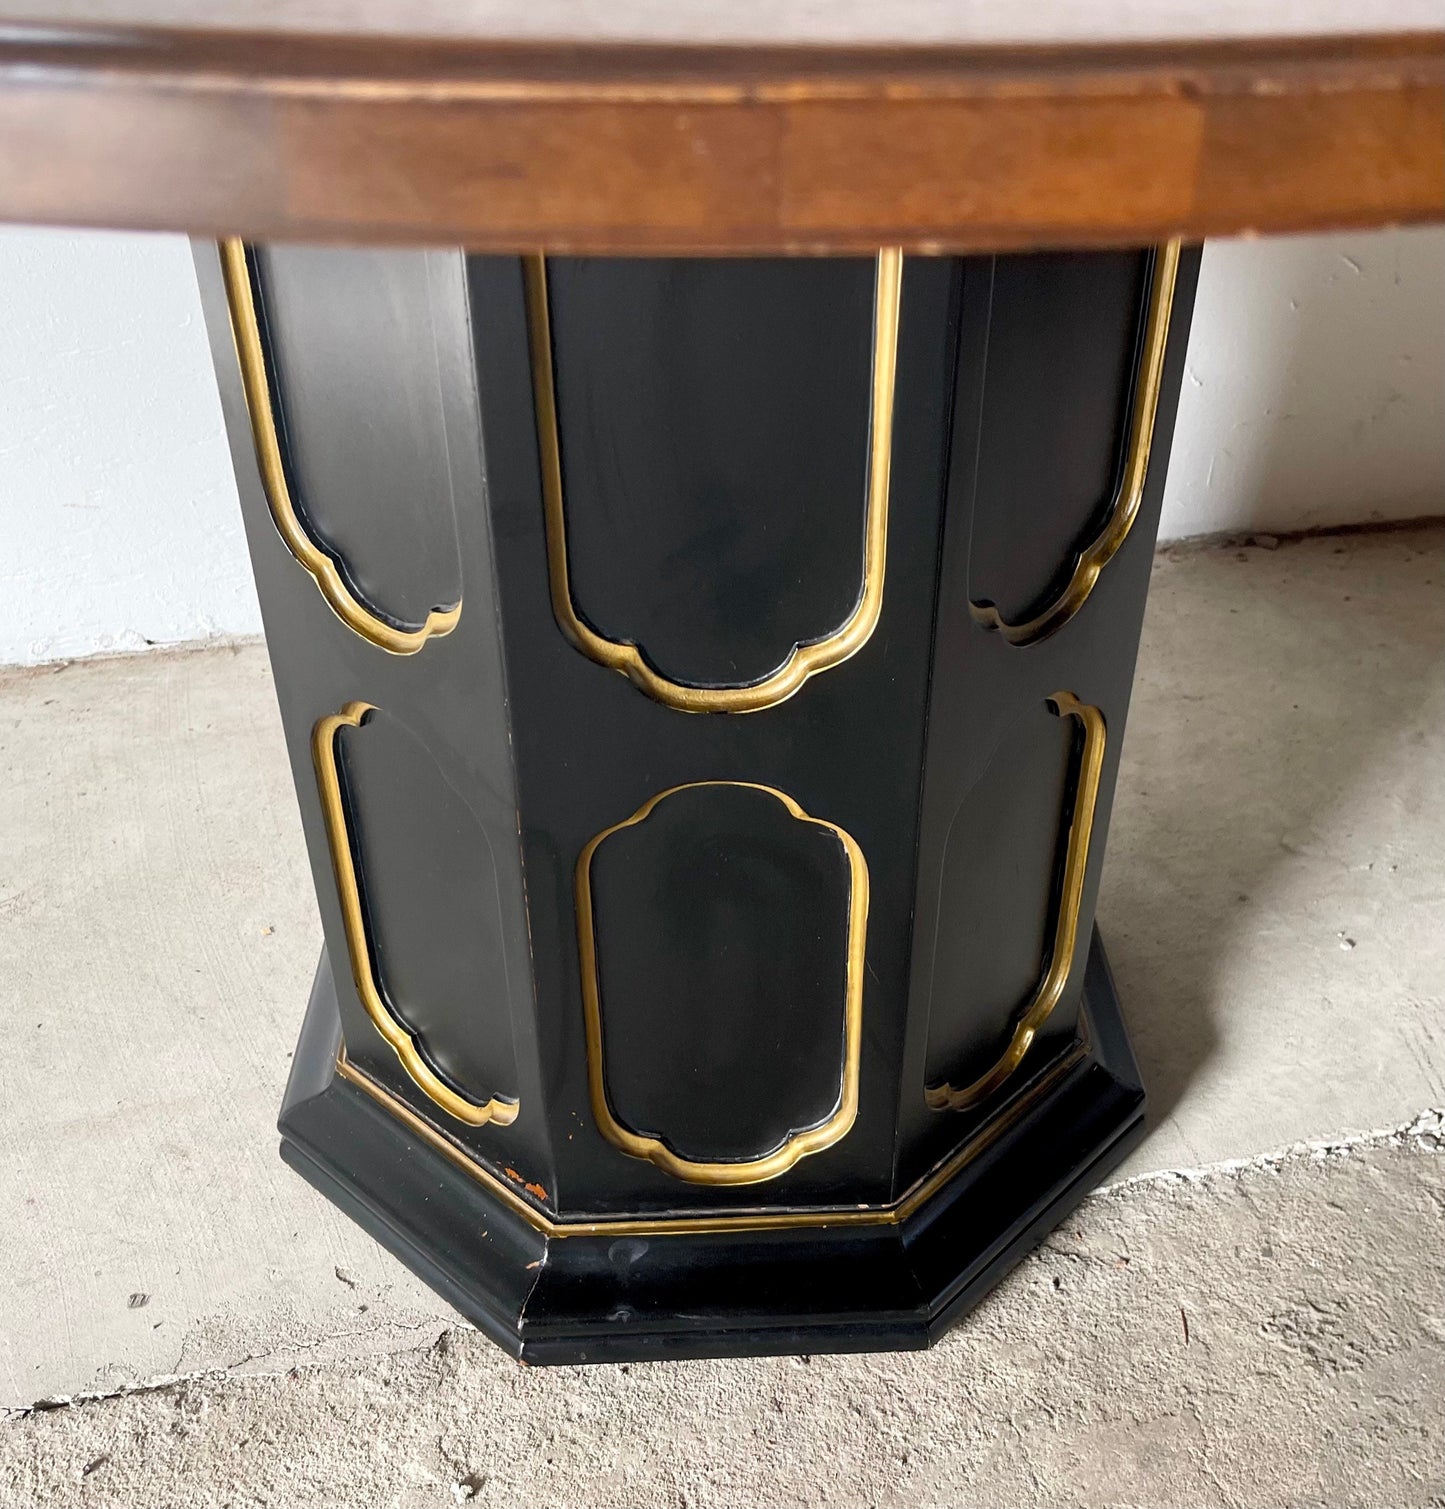 Vintage Regency Pedestal Game or Center Table